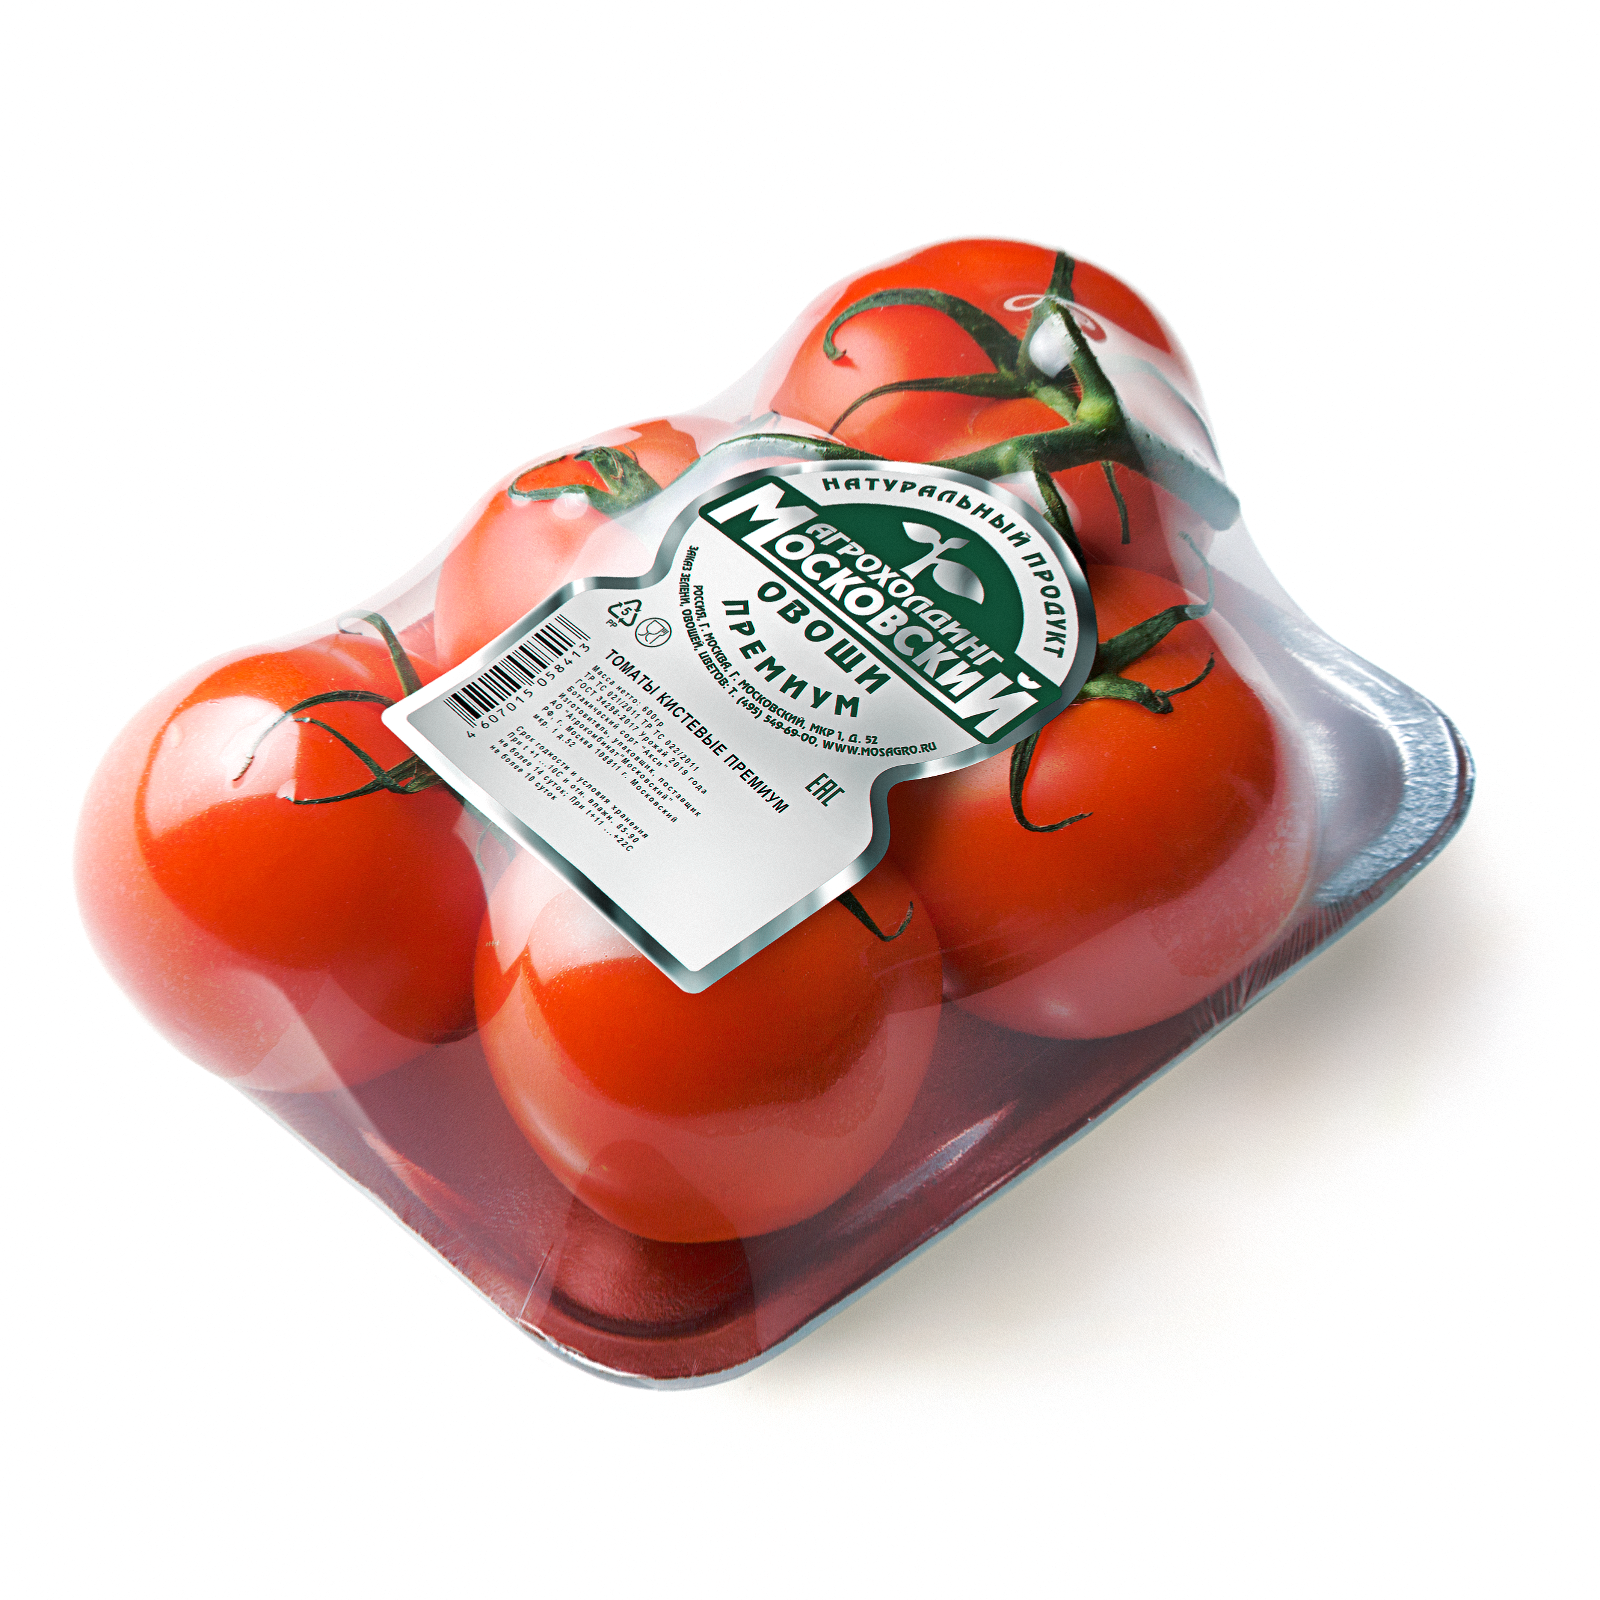 Image томаты кистевые